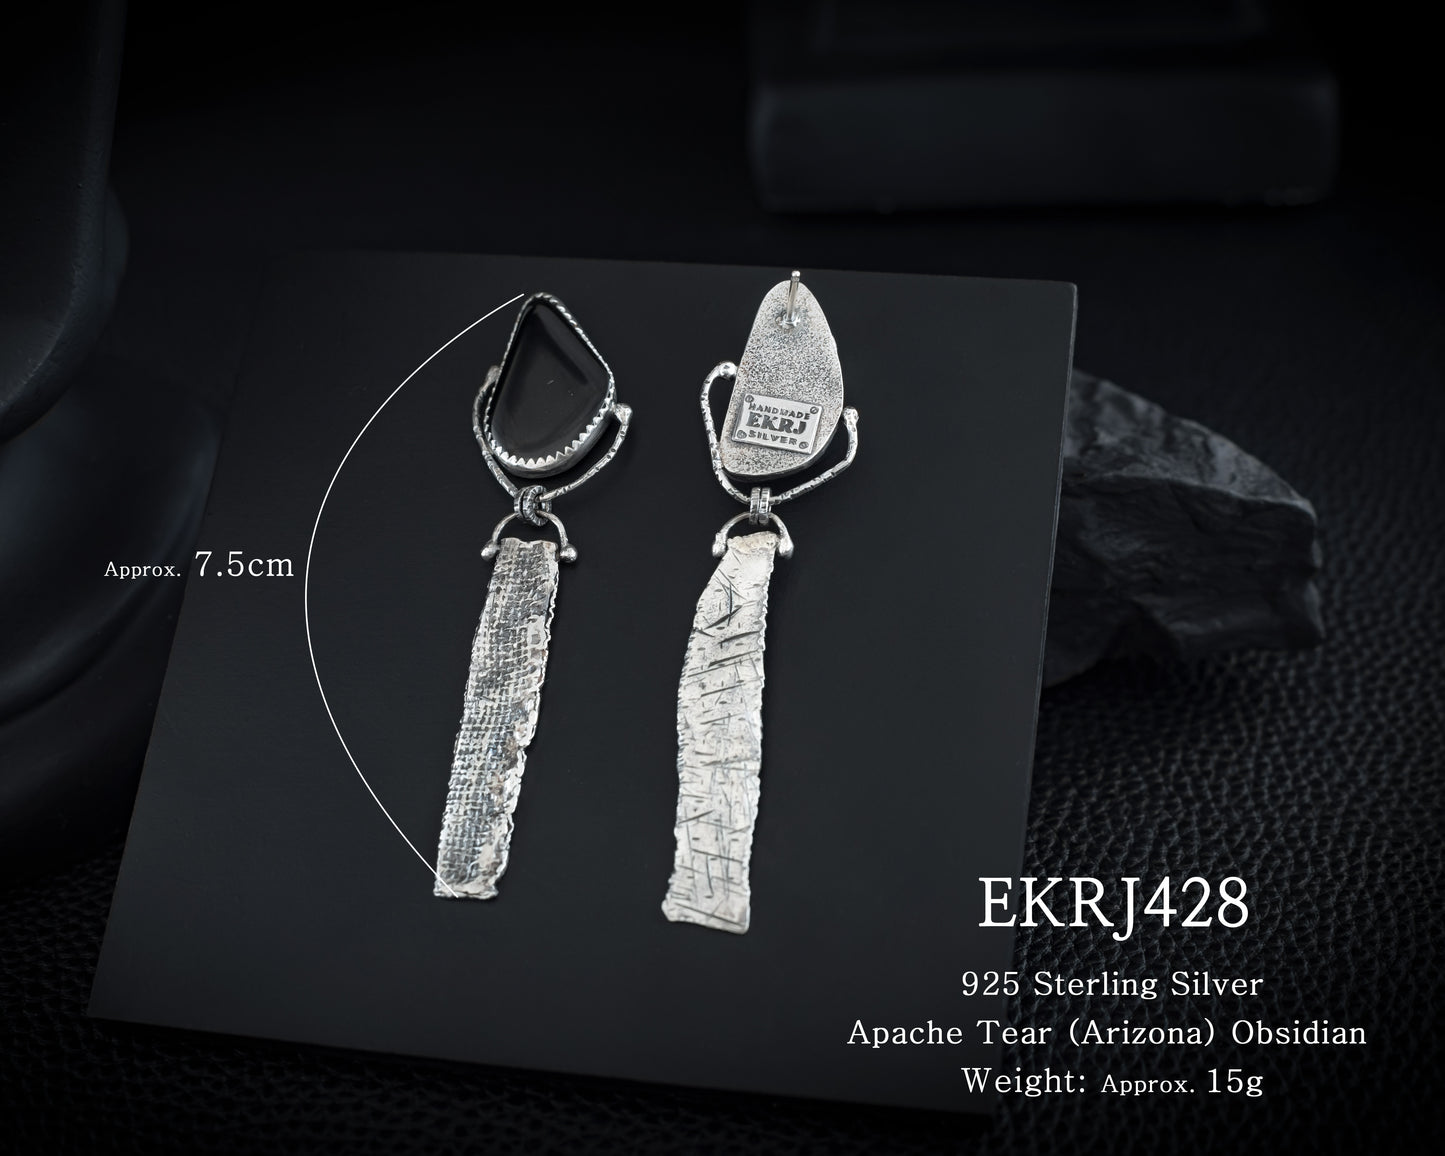 EKRJ428 Obsidian Handmade Silver Earrings